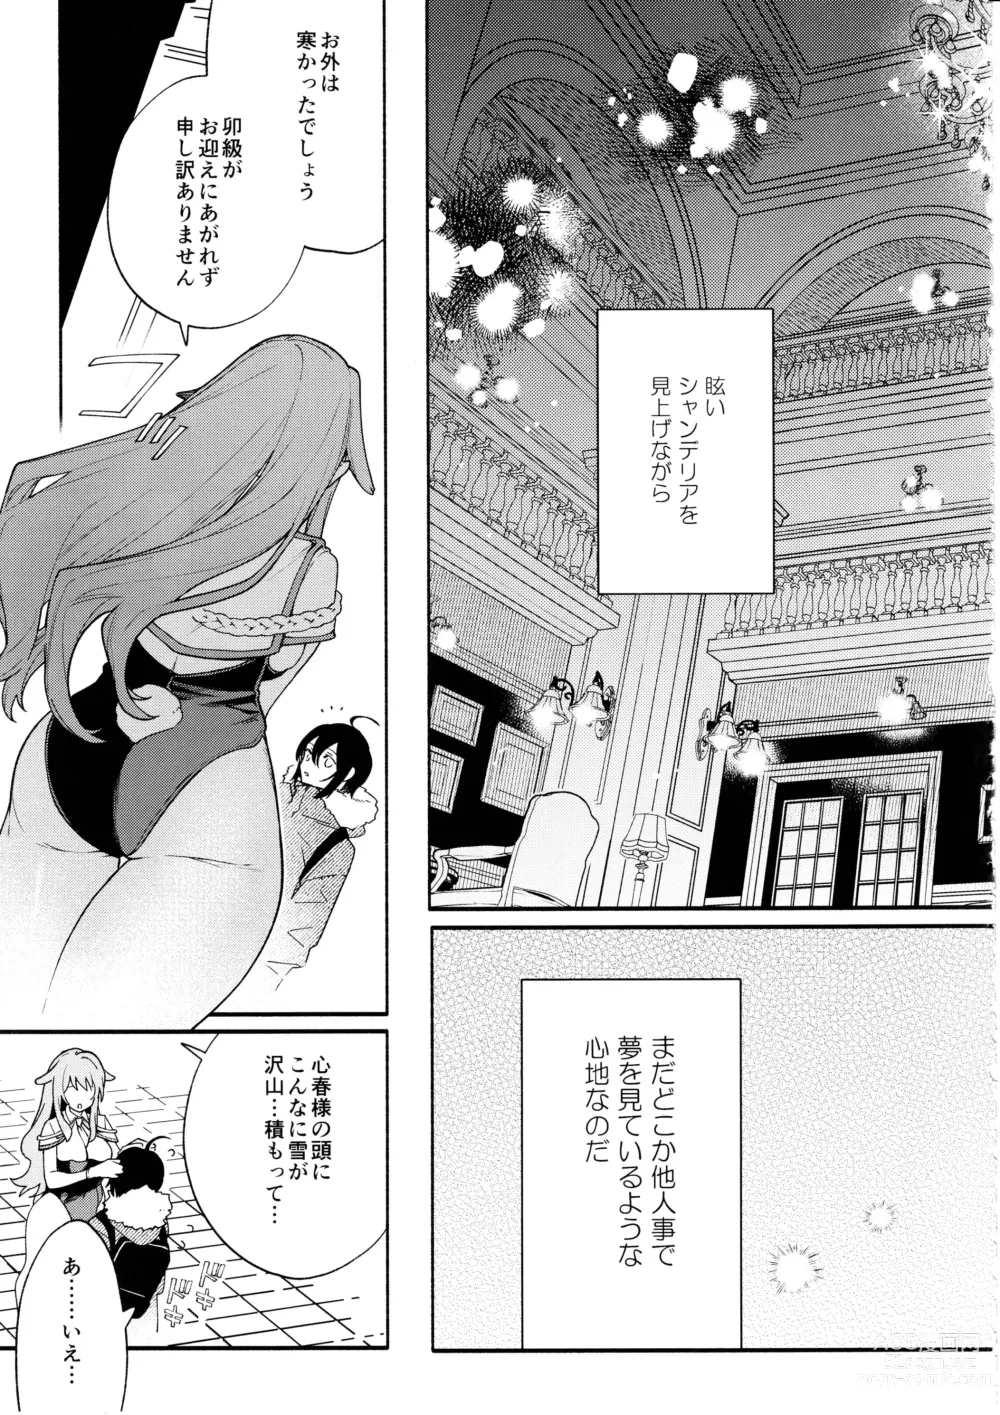 Page 10 of doujinshi Kimi no Tame no Hotel